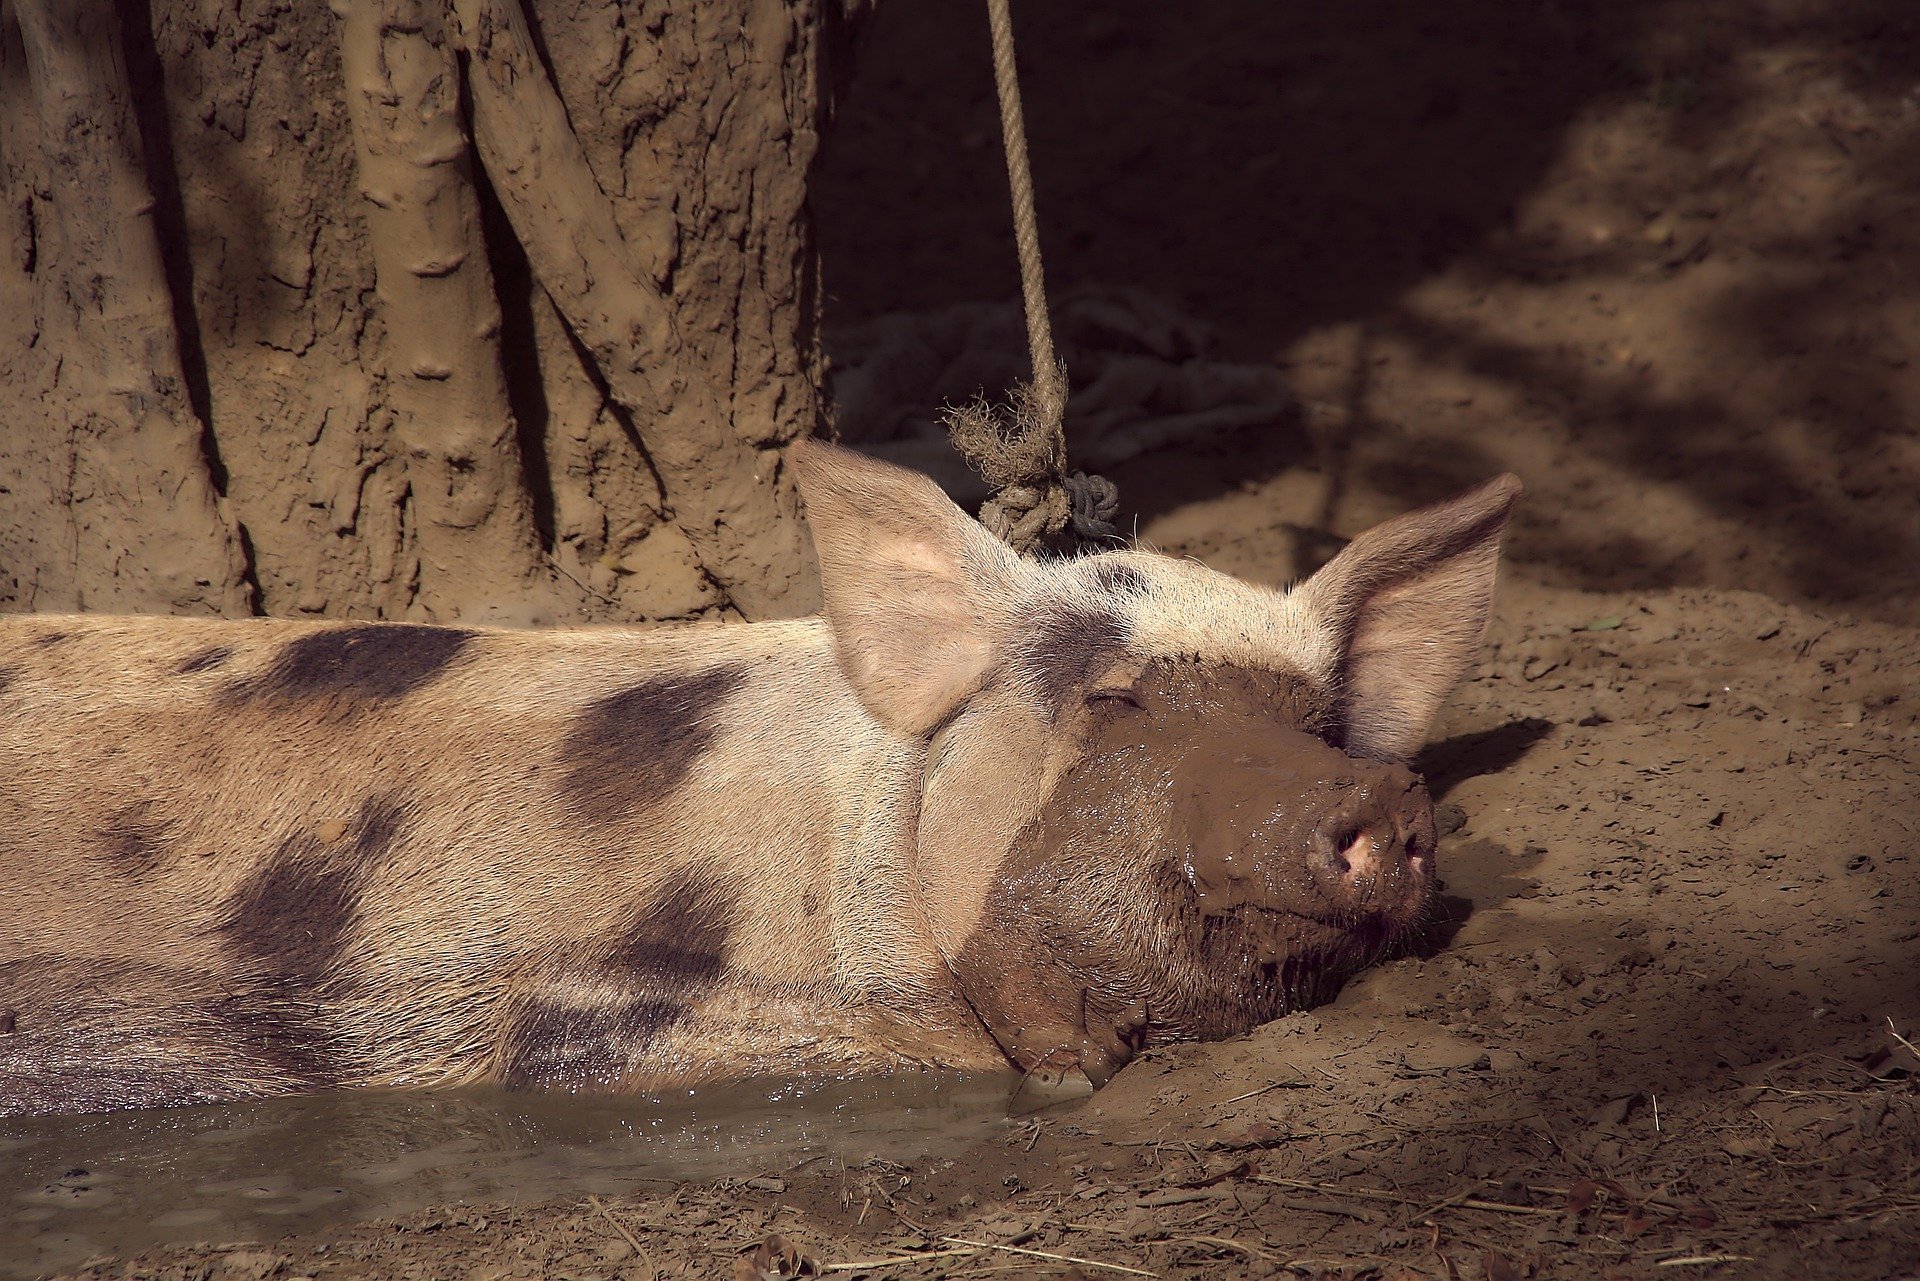 

В Удмуртии за антисанитарию закрыли частную свиноферму

